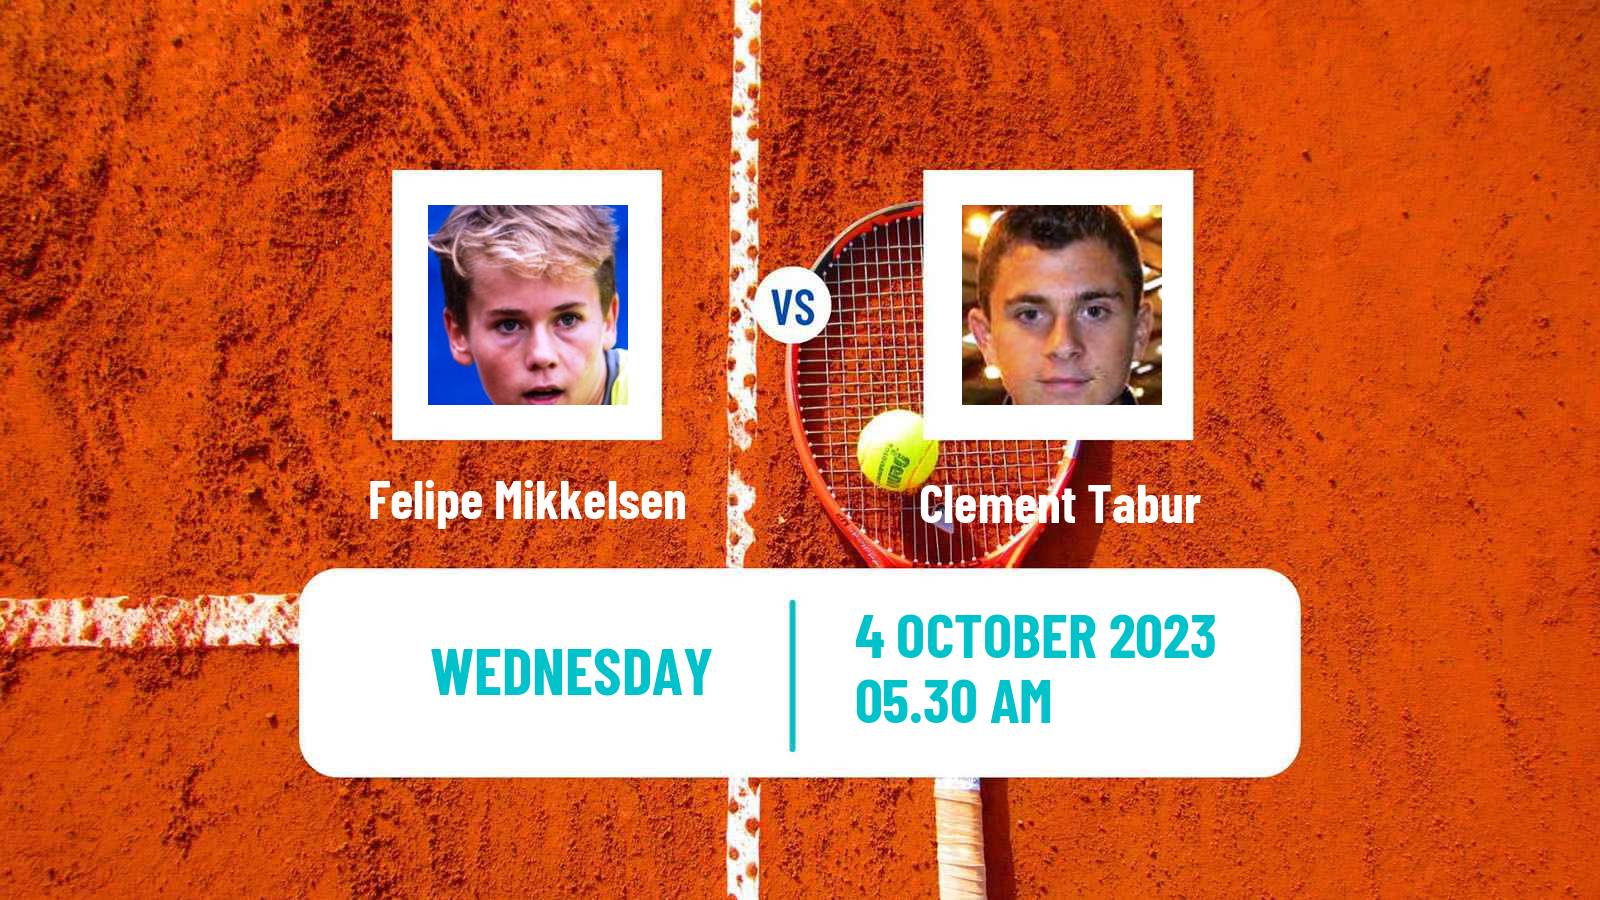 Tennis ITF M25 Pazardzhik 2 Men Felipe Mikkelsen - Clement Tabur